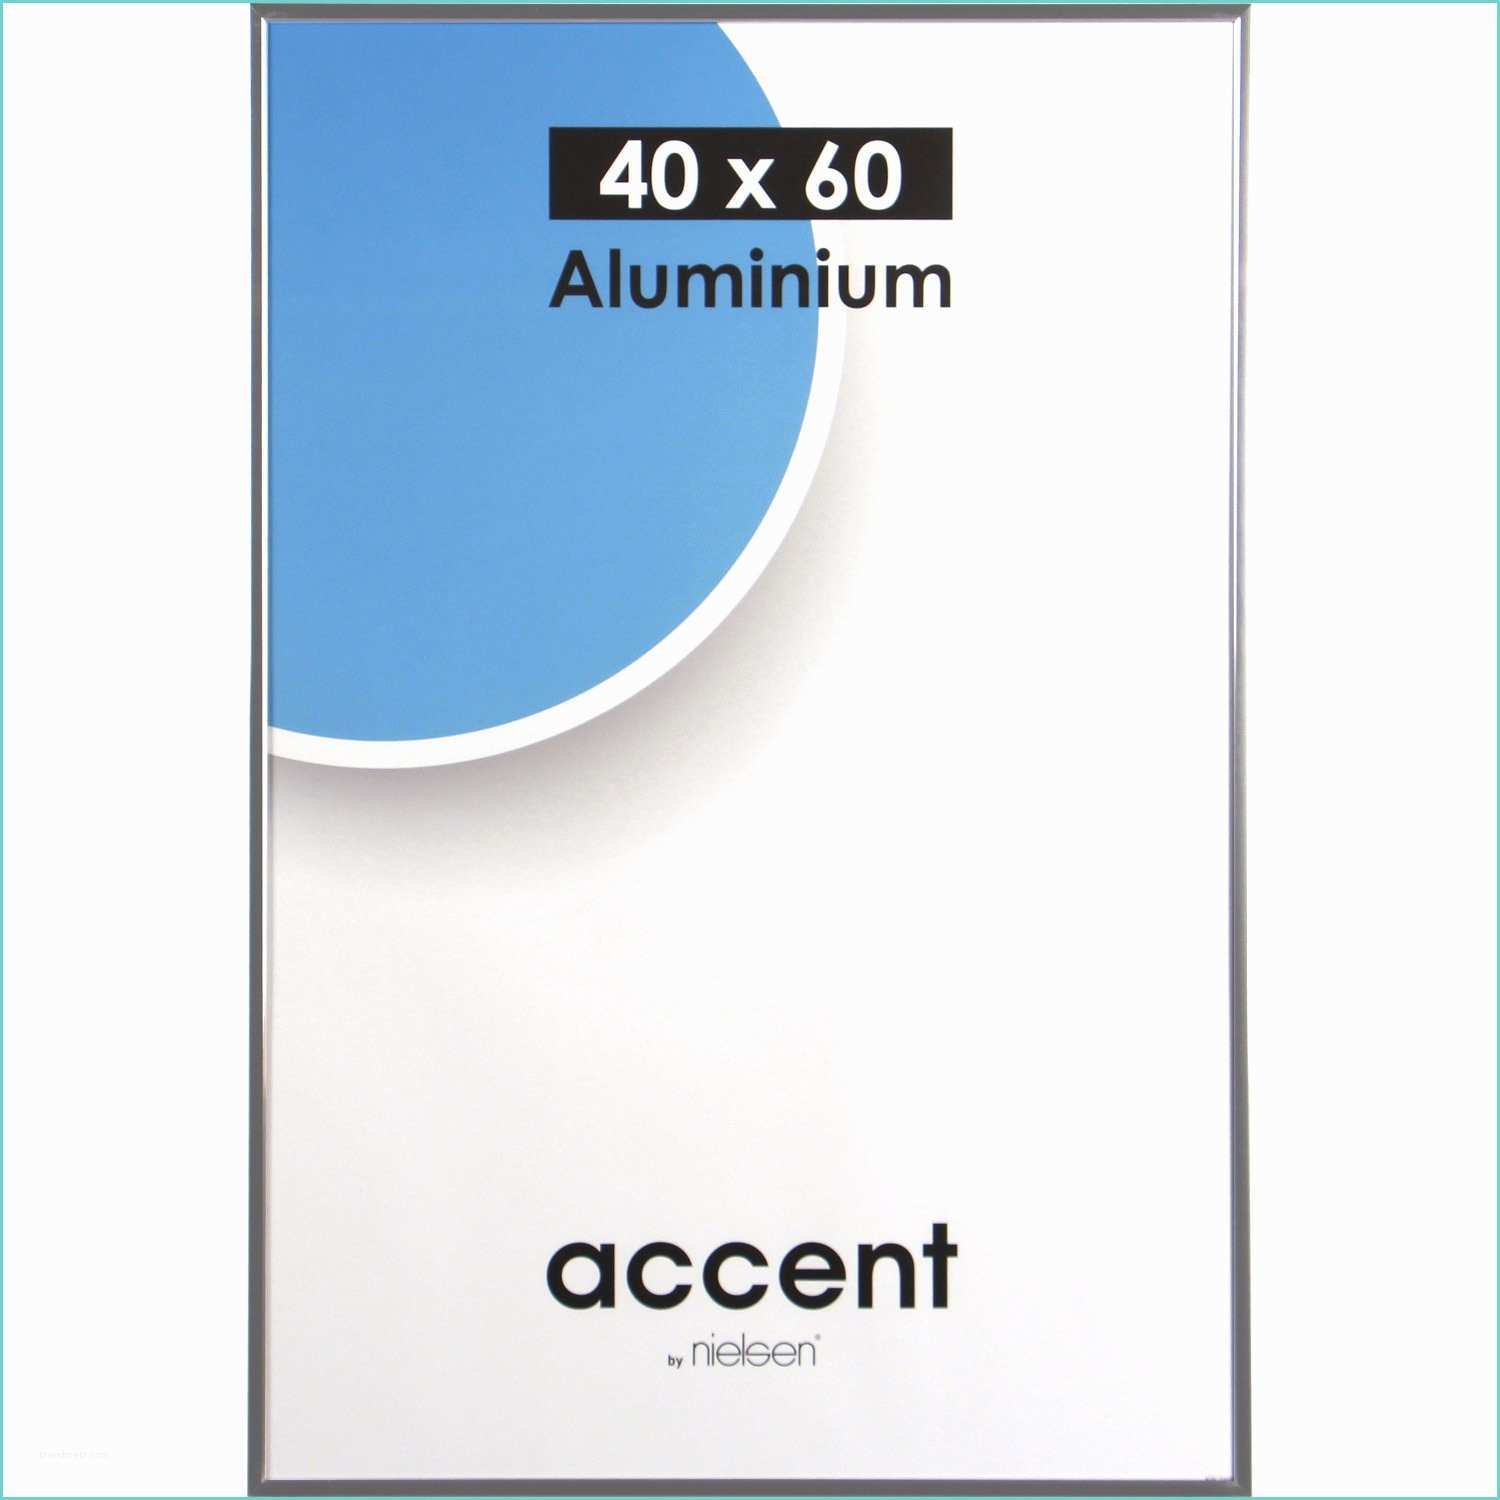 Cadre Aluminium Leroy Merlin Cadre Accent 40 X 60 Cm Argent